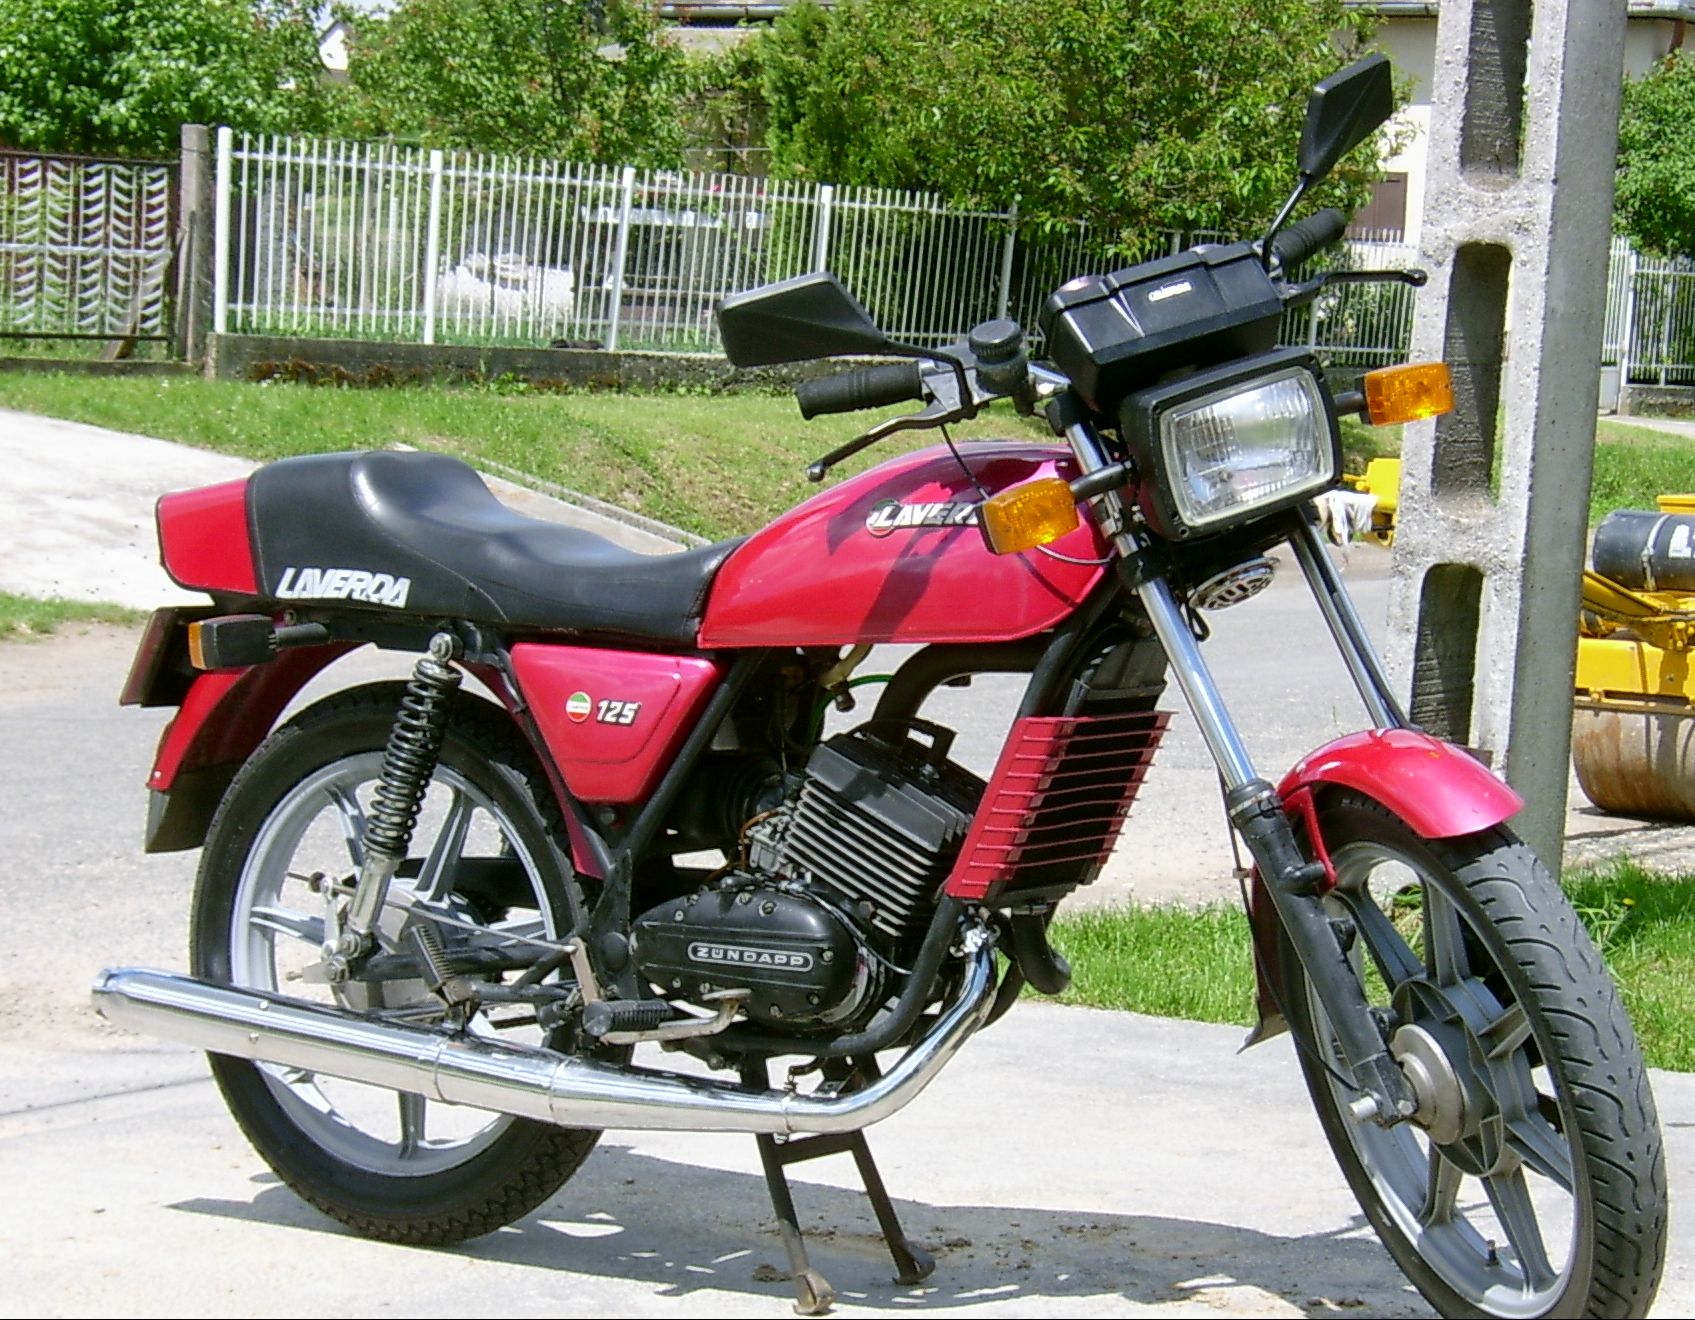 Laverda 125 LZ | Motociclette, Anni 80